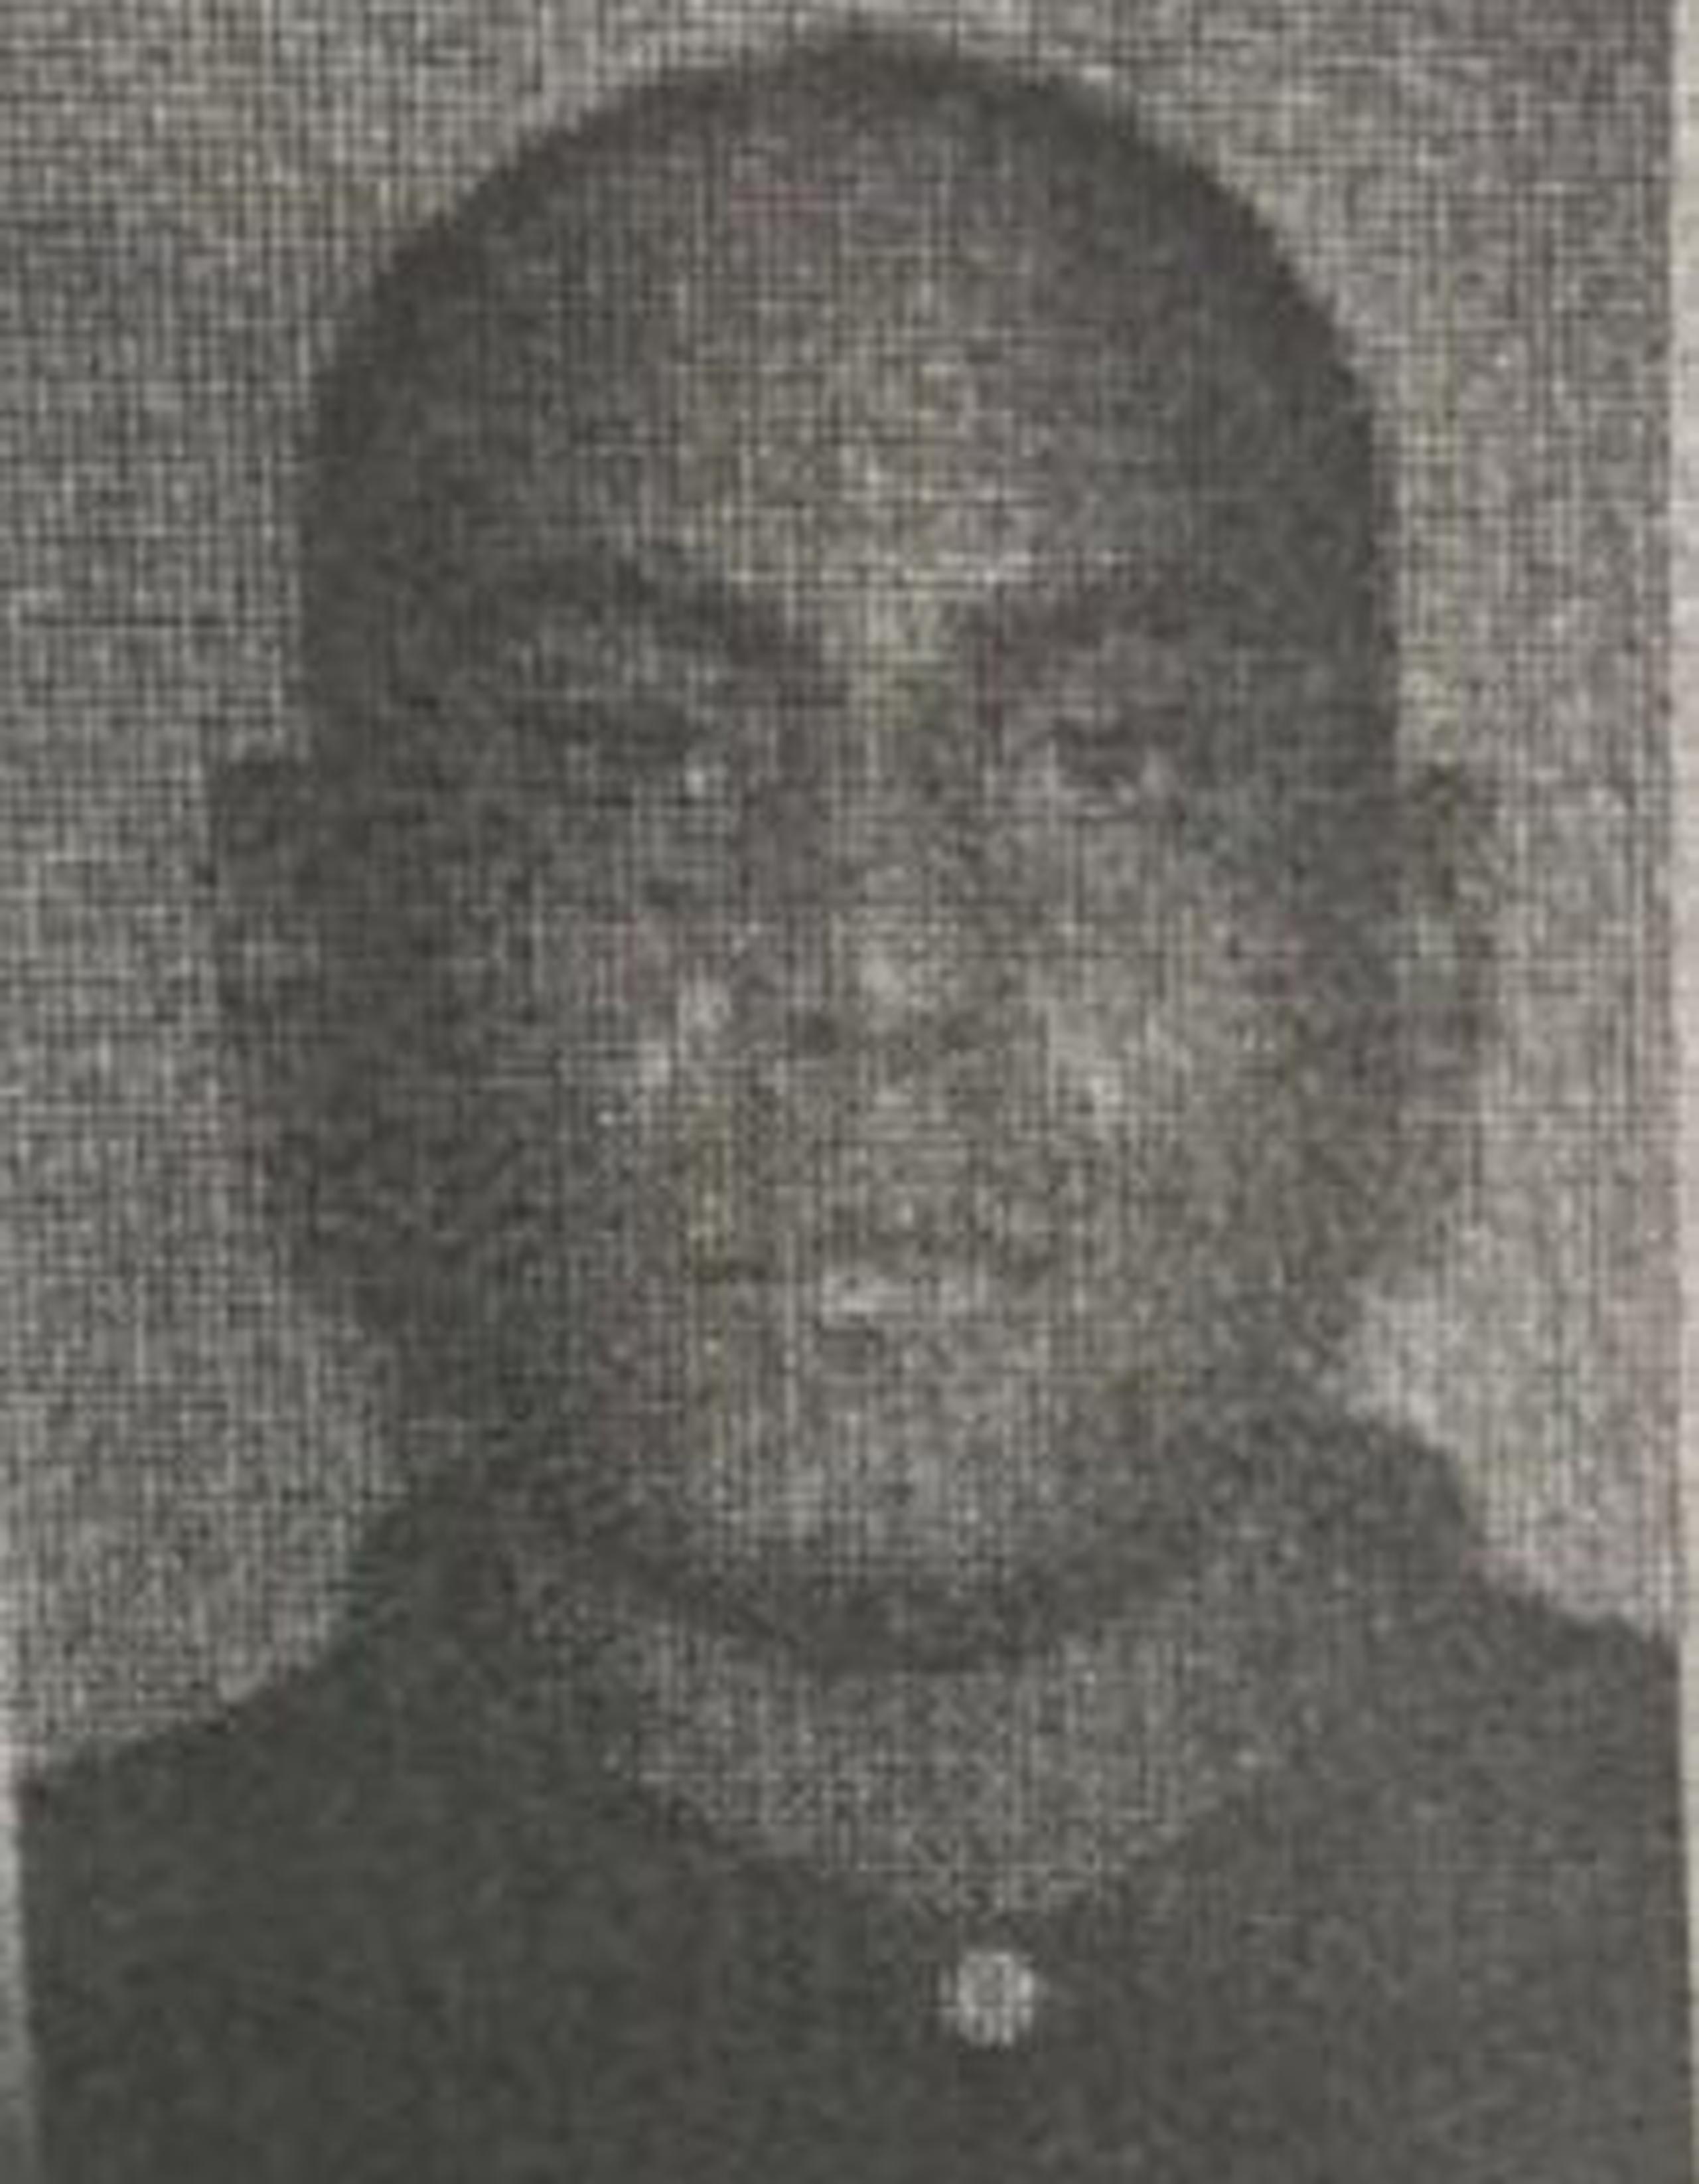 Juan E. Ramos García, alias “Prieto”, tiene una orden de arresto con $50,000 de fianza. (Suministrada)